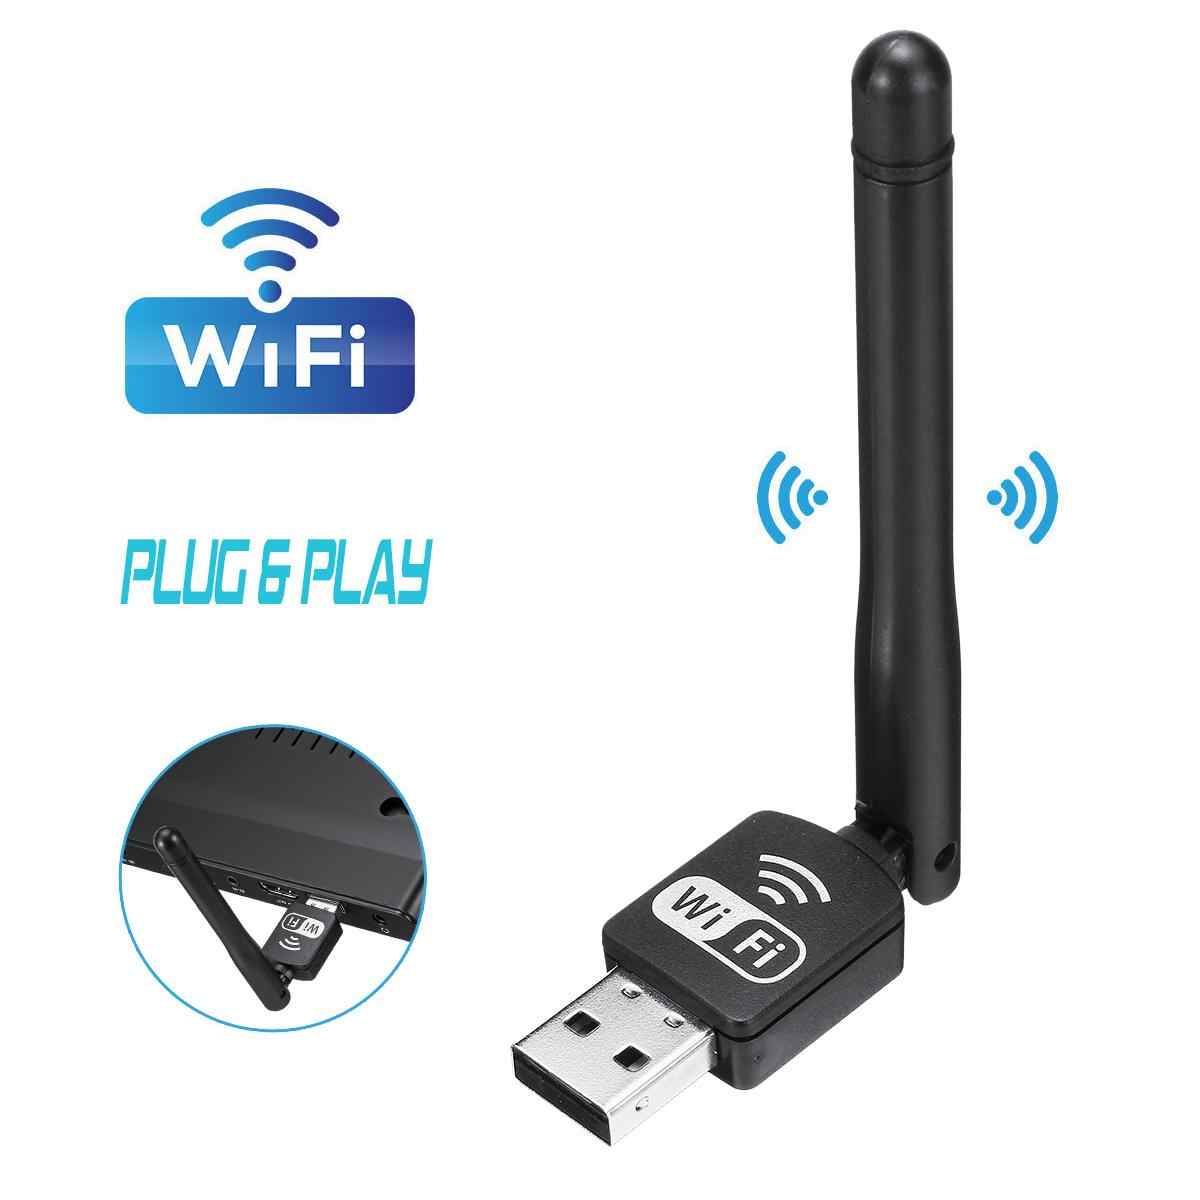 Wi-fi-адаптер своими руками: из usb-модема, телефона или планшета, схема